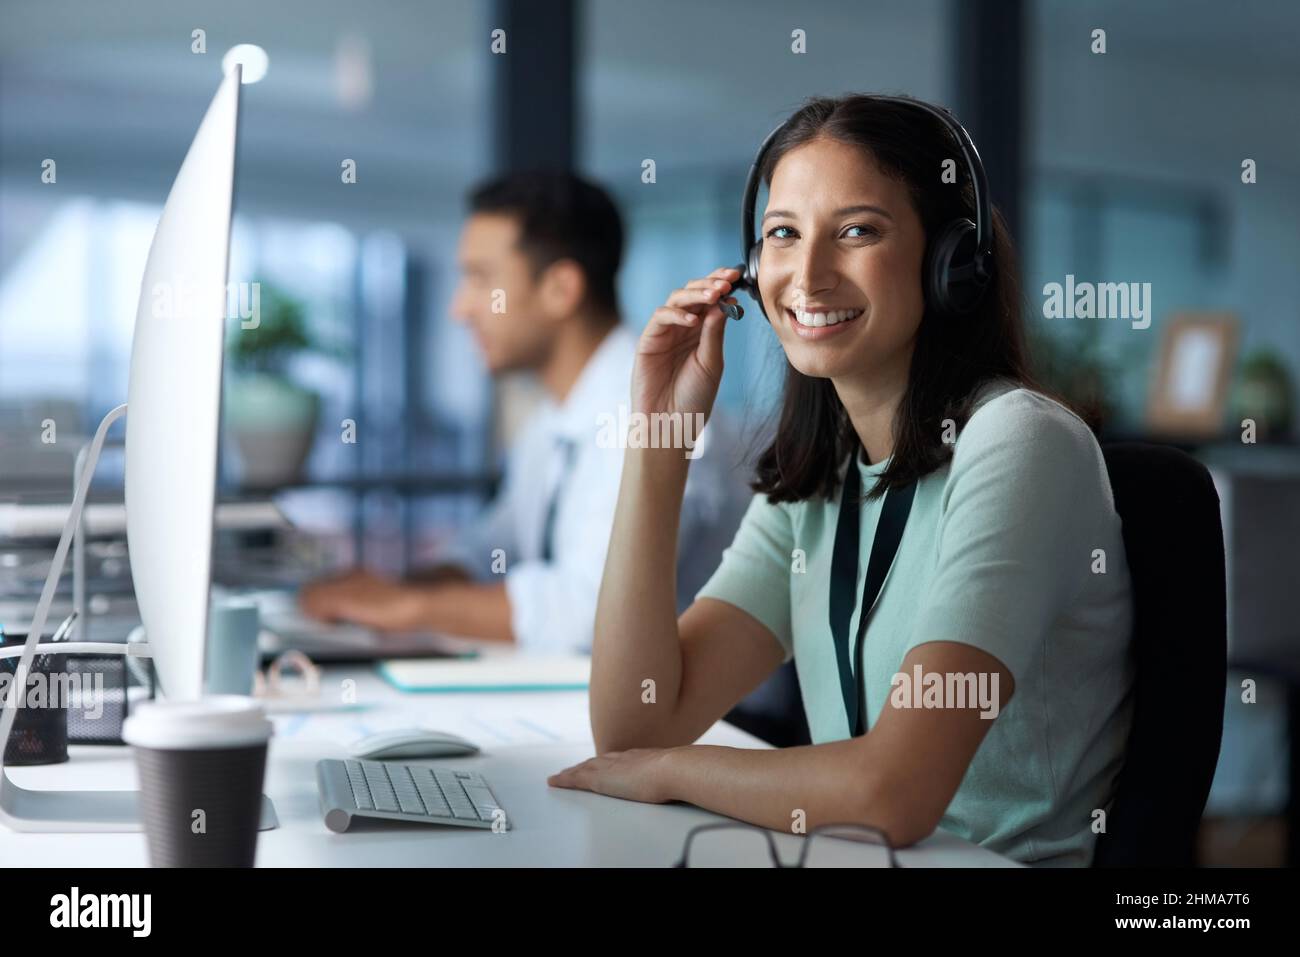 Te escucho. Retrato de una mujer joven utilizando un auricular y un ordenador en una oficina moderna. Foto de stock